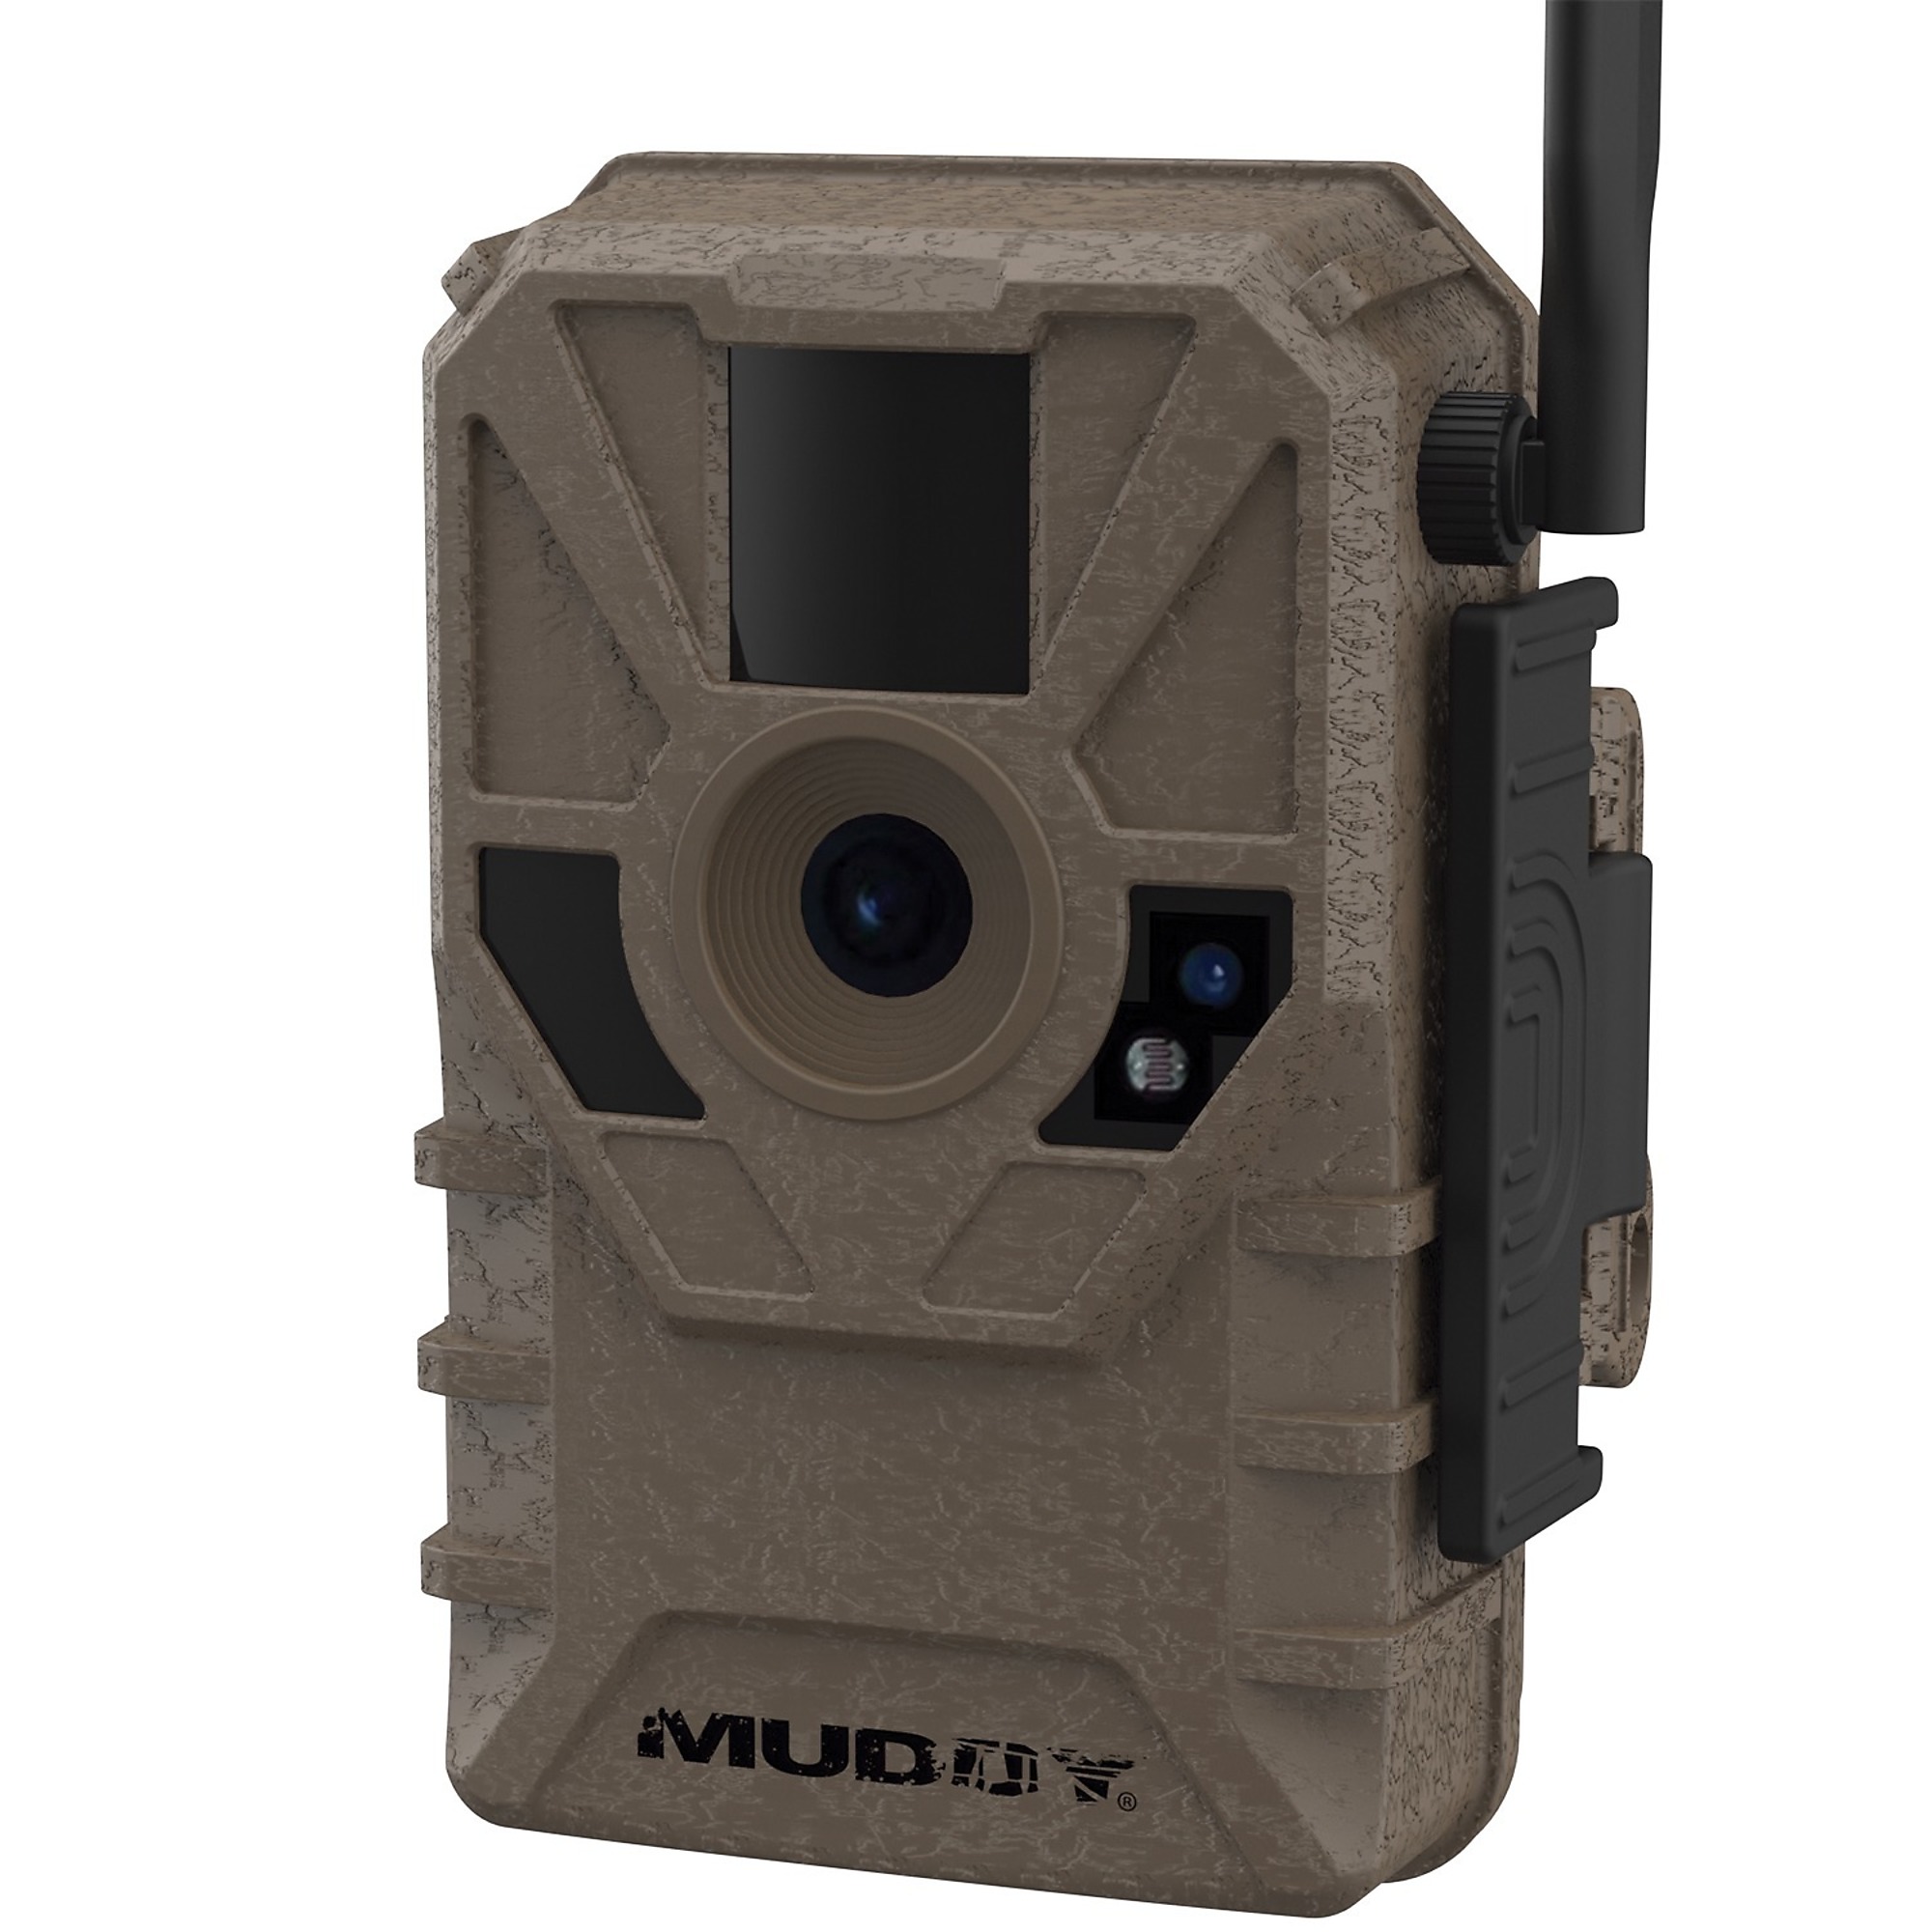 Muddy, Manifest 16MP Cellular Trail Camera (ATT), Color Orange, Material Plastic, Model MUD-ATW